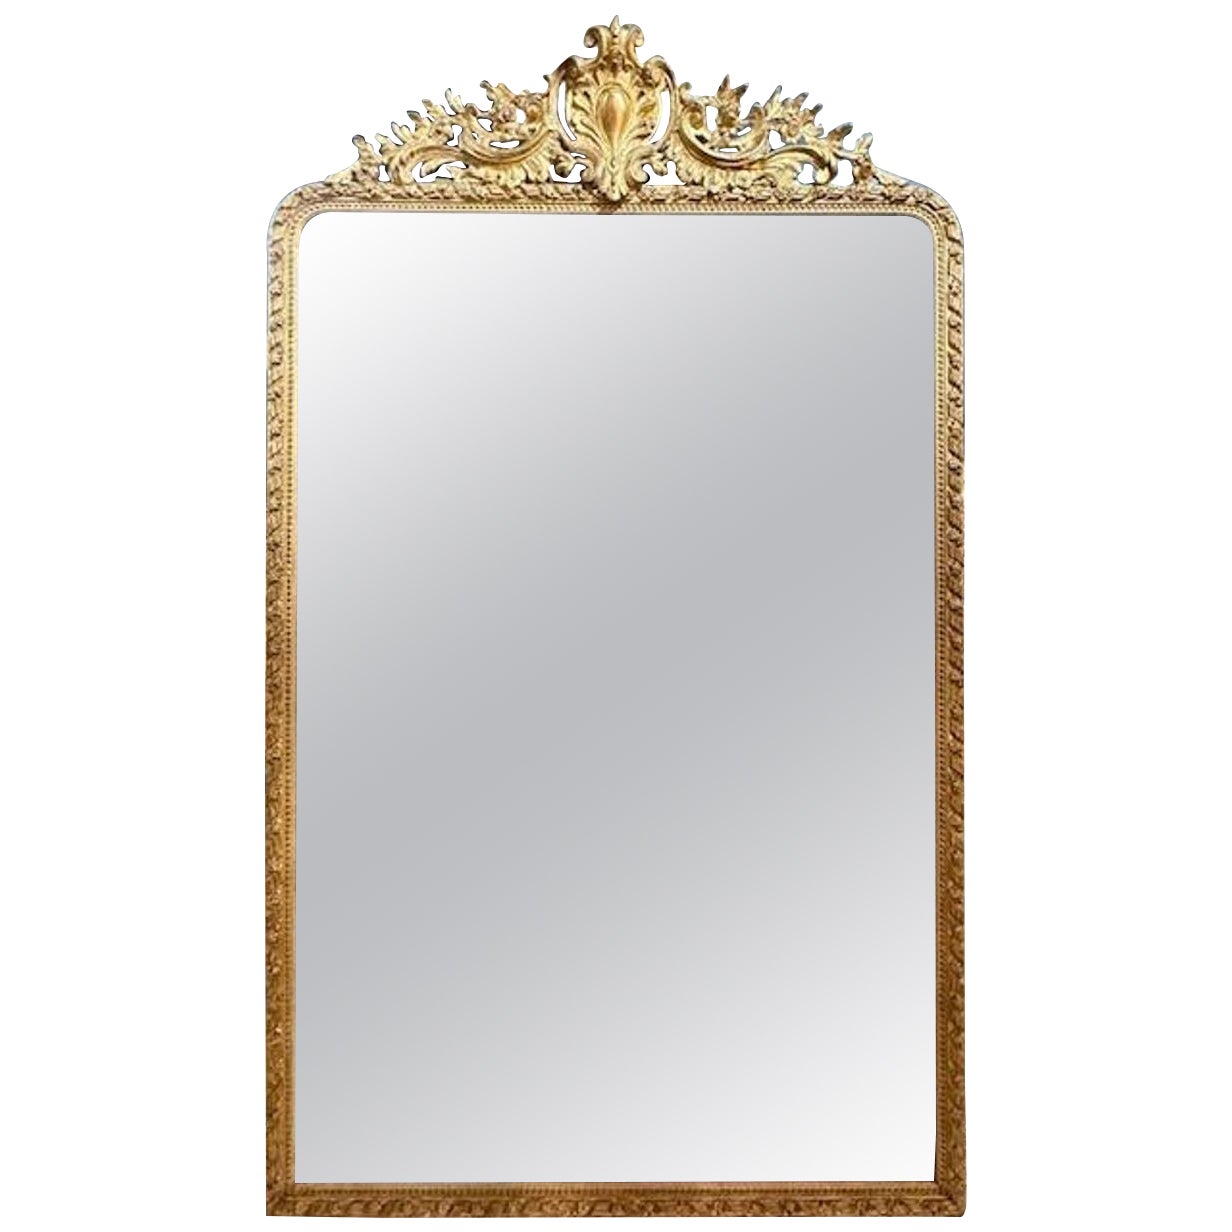 Empire Giltwood Eglomise" Mirror